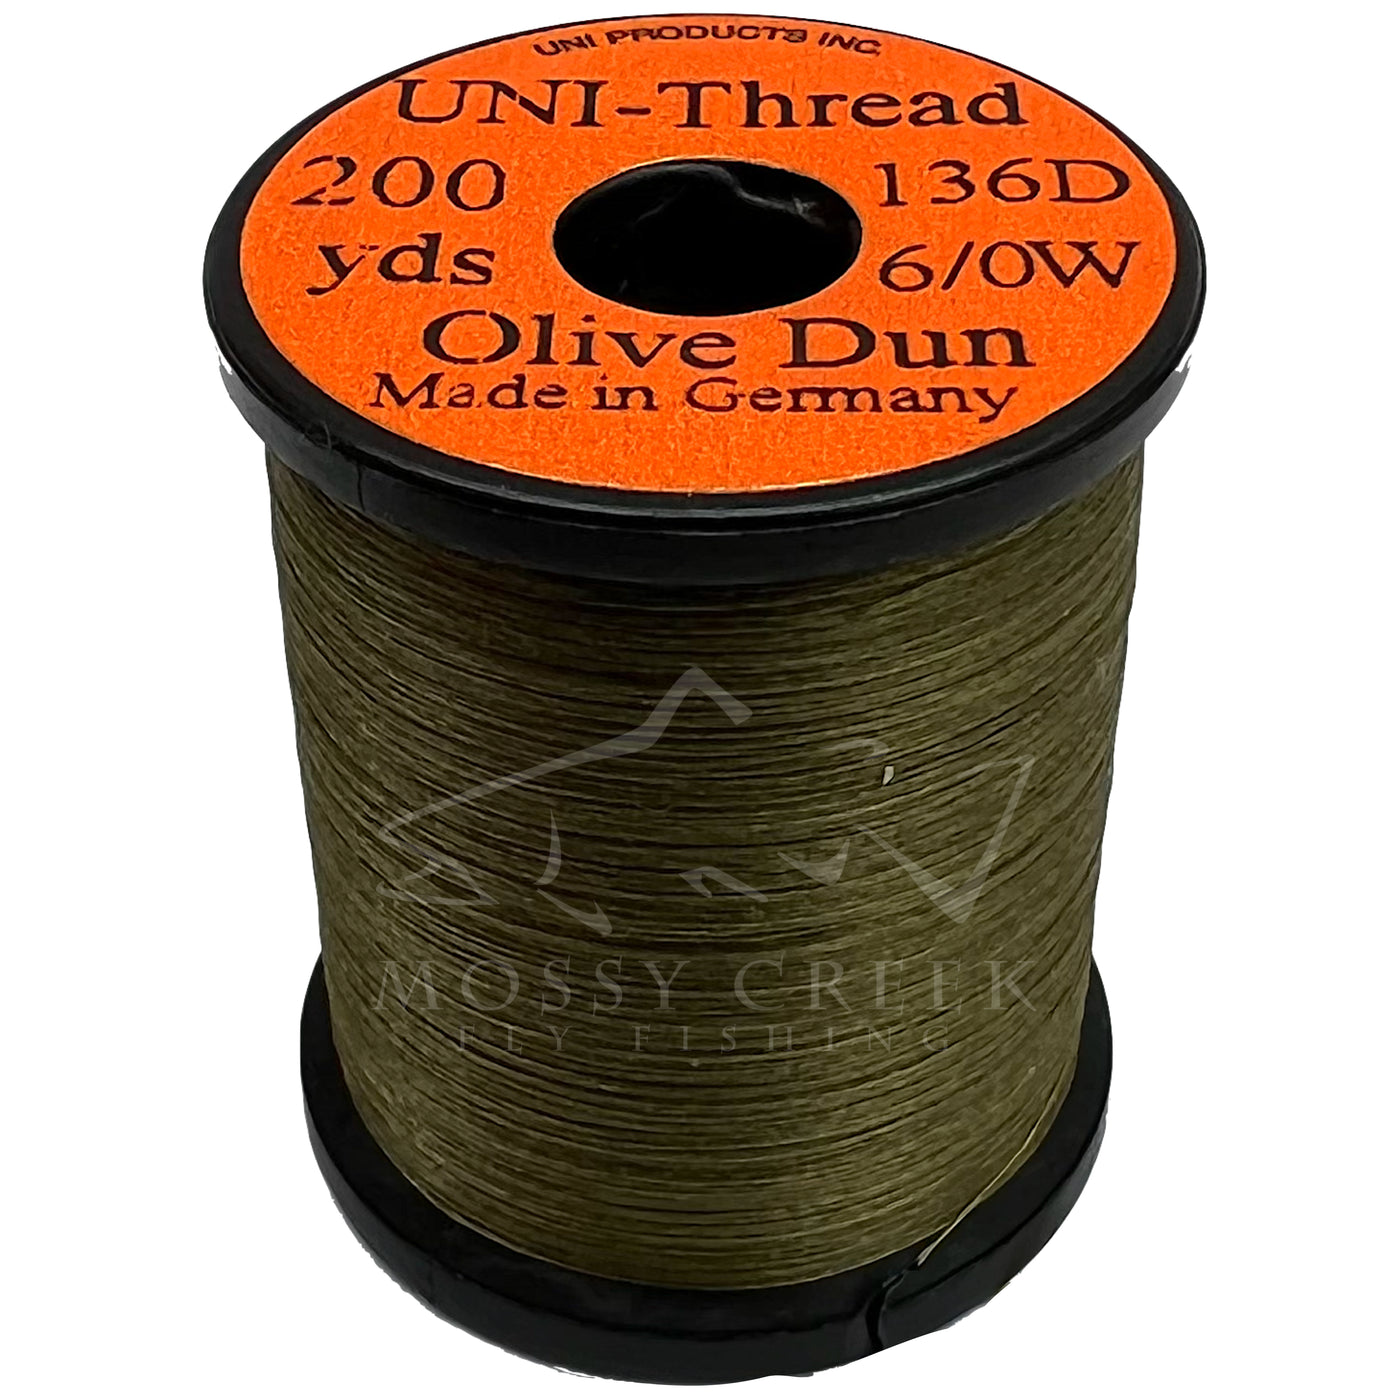 UNI-Thread 6/0 Waxed Olive